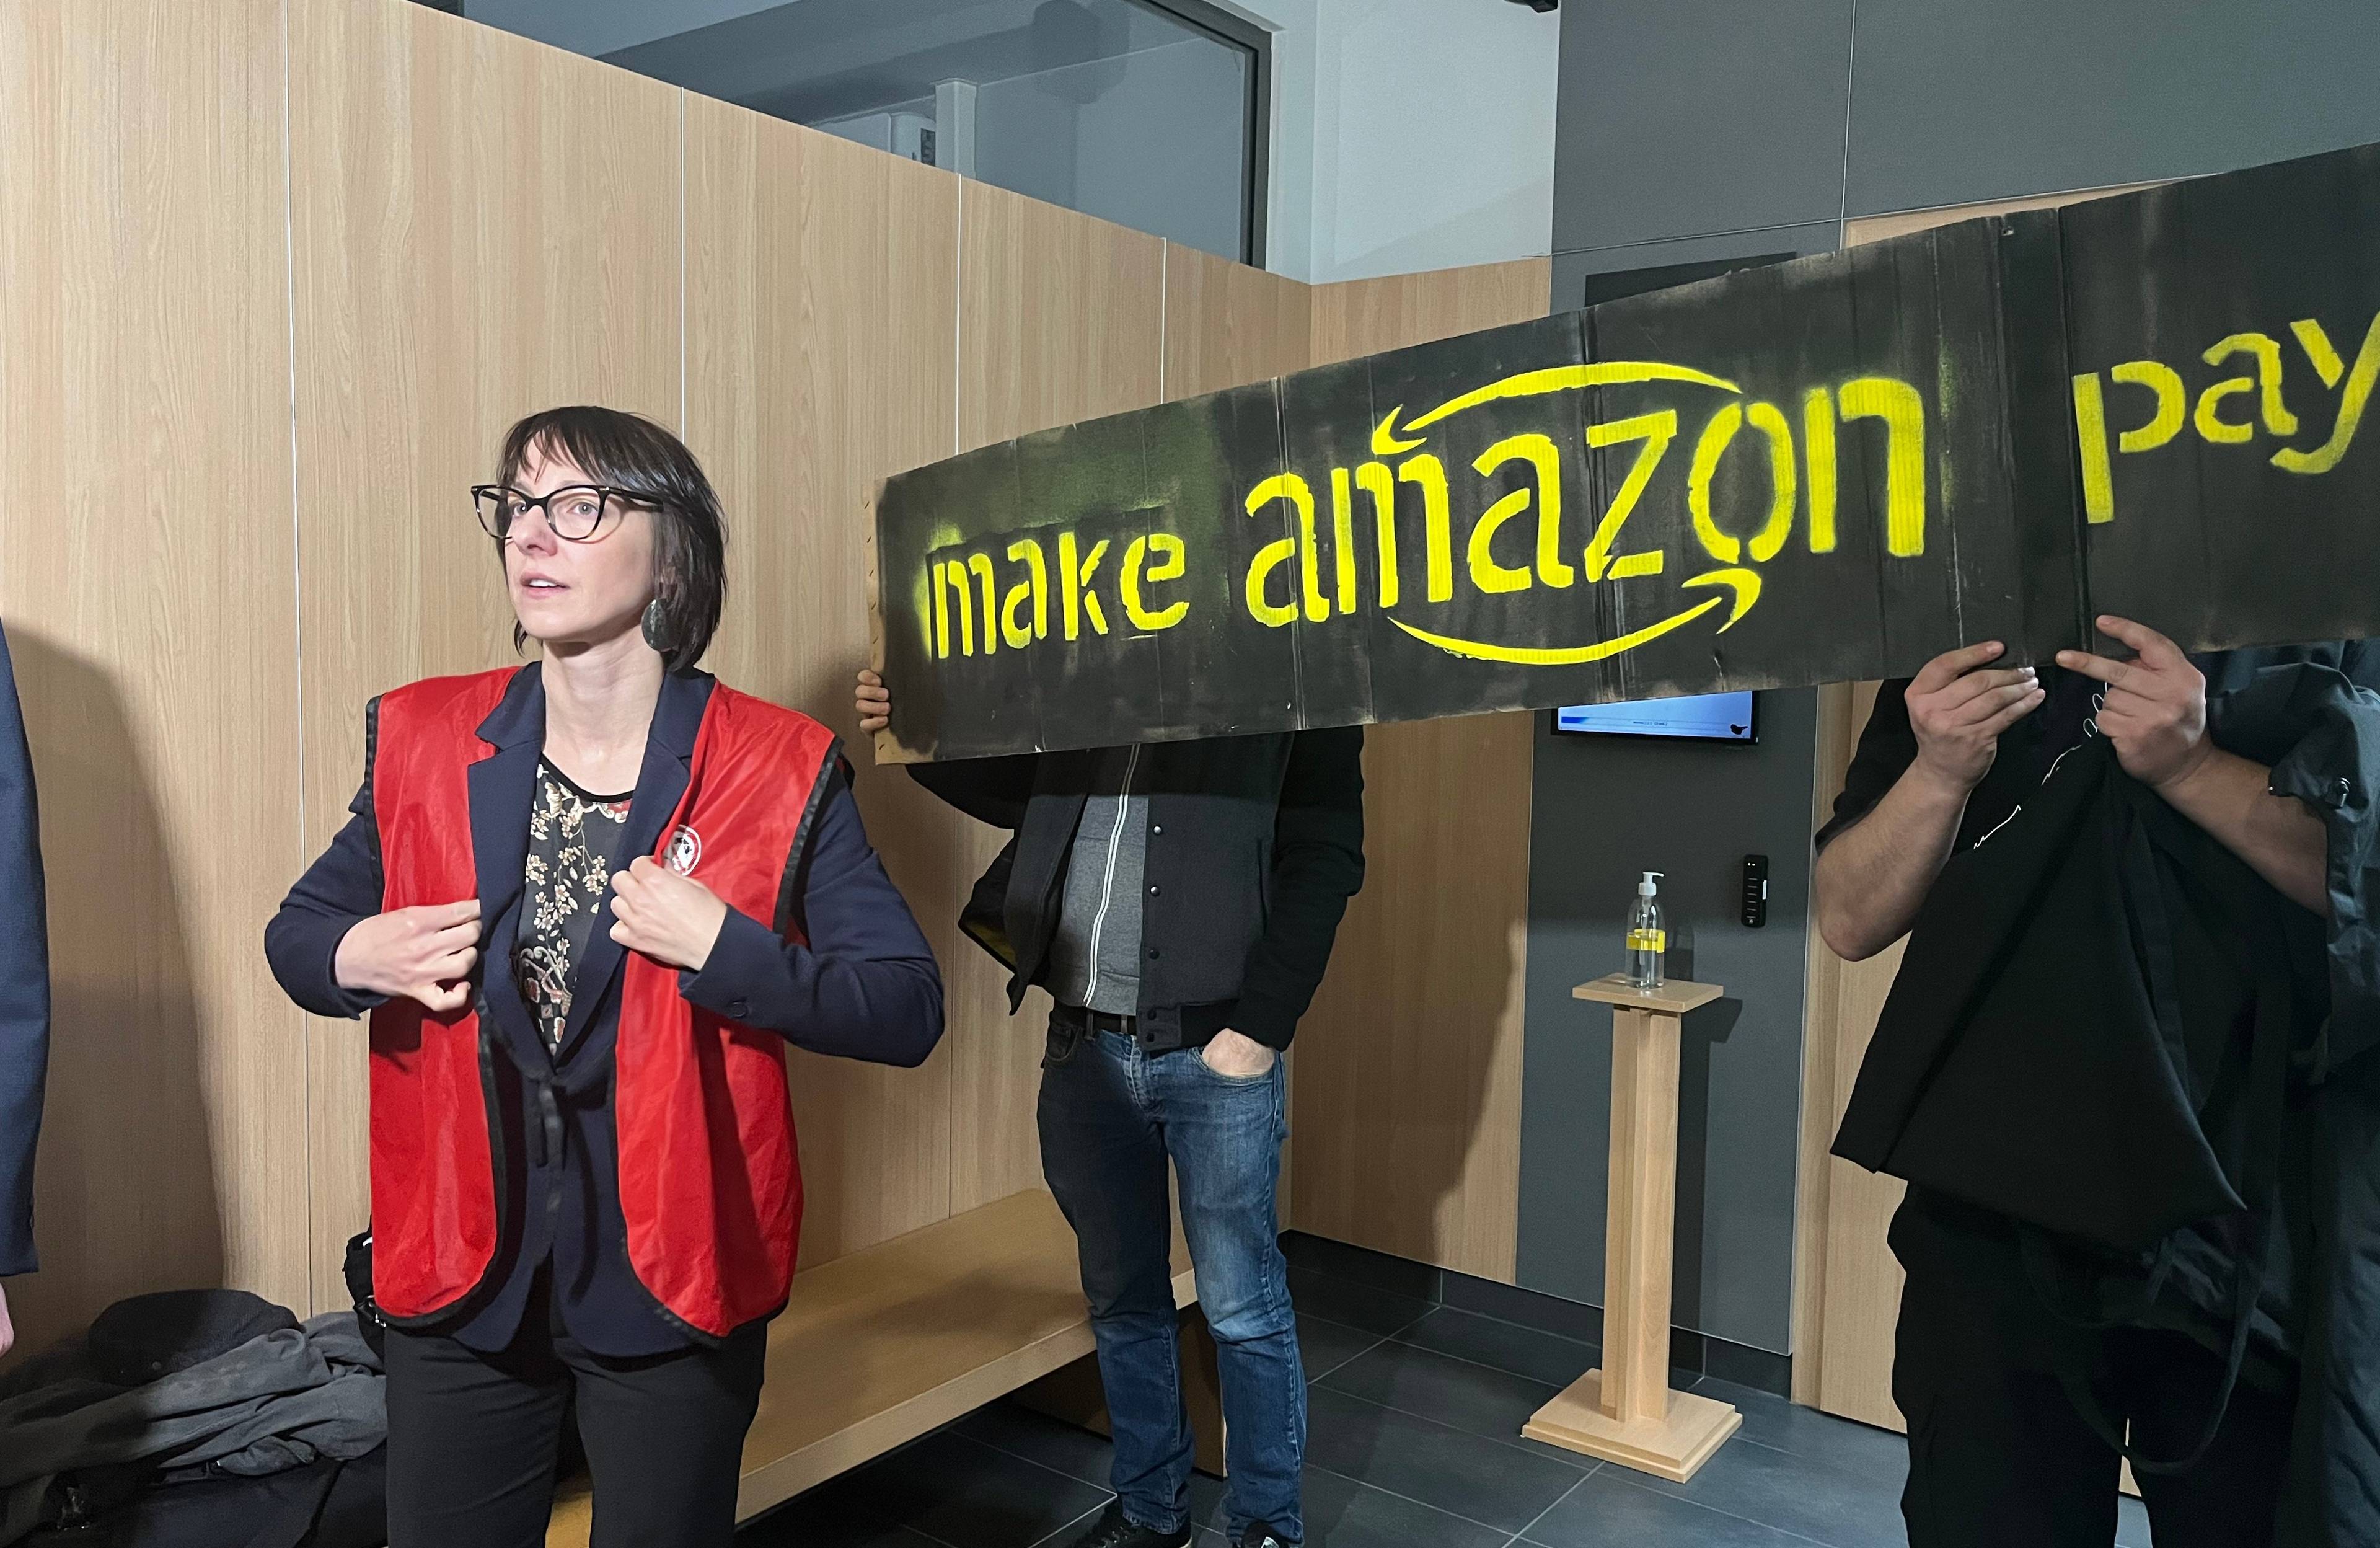 Kobieta w czerwonej kamizelce na tle transparentu "Make Amazon pay"